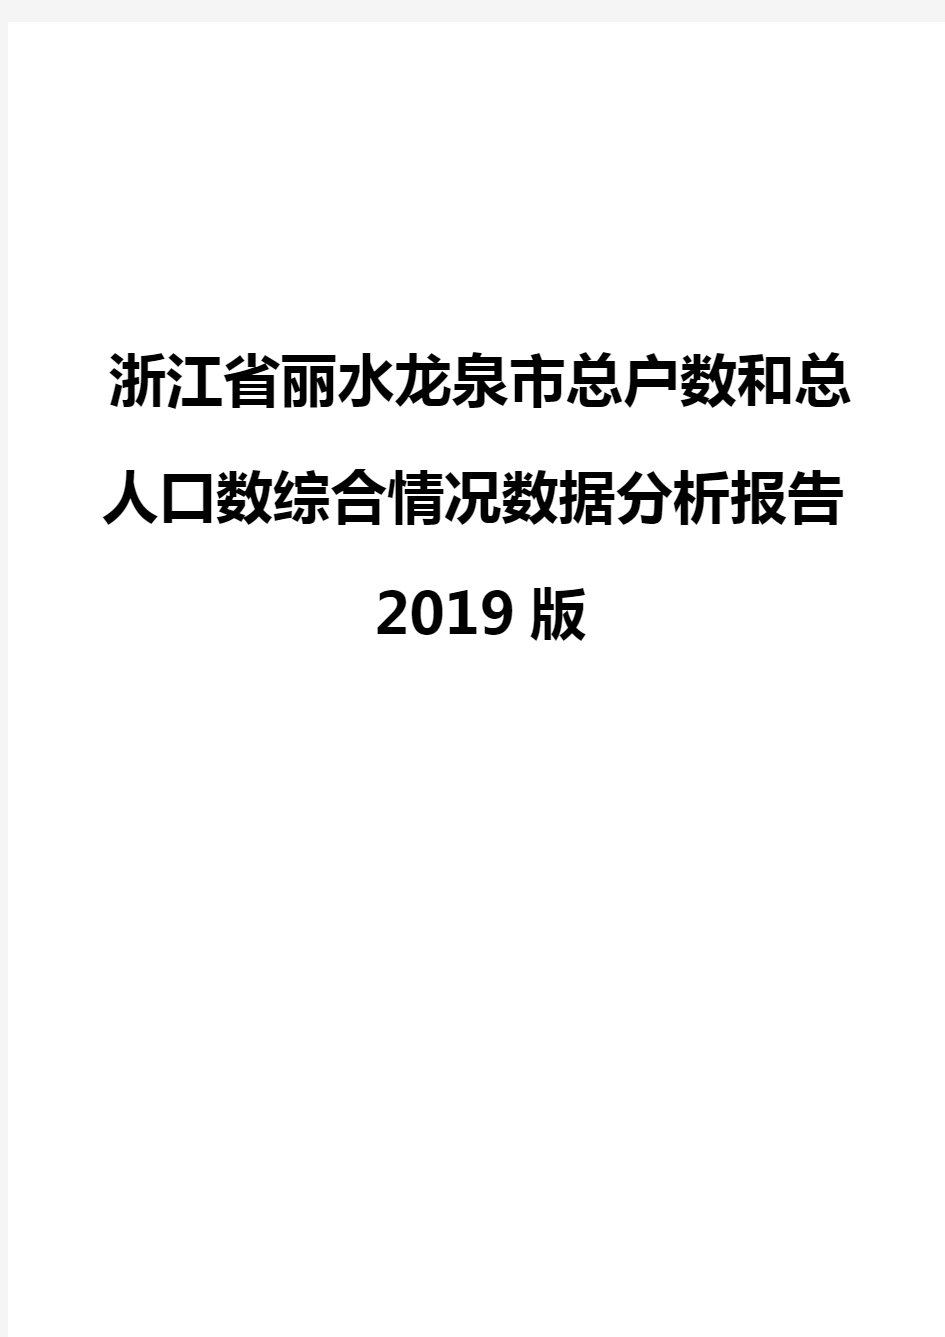 浙江省丽水龙泉市总户数和总人口数综合情况数据分析报告2019版